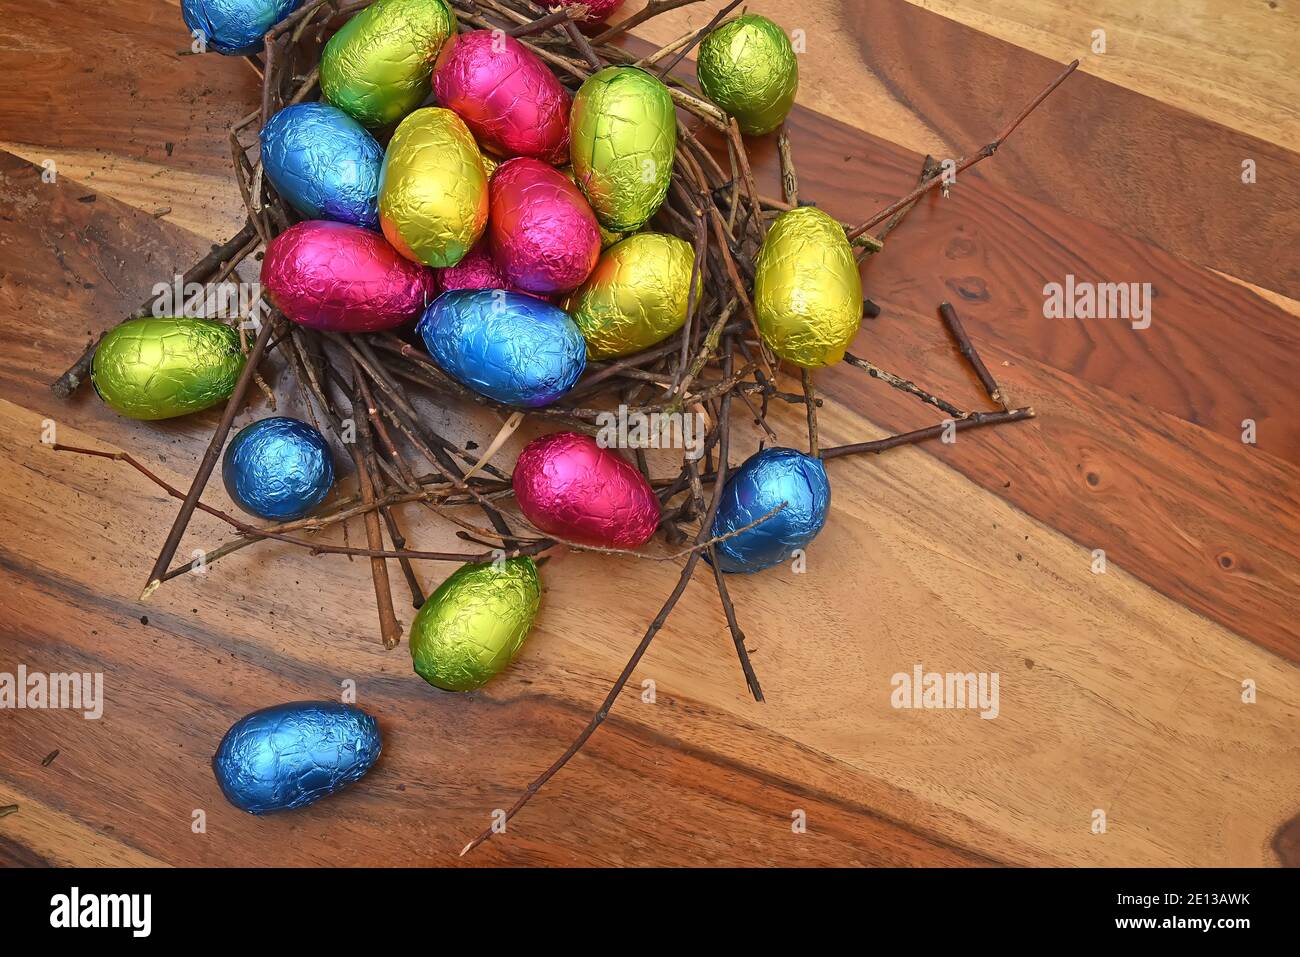 Des œufs de pâques colorés enveloppés de papier d'aluminium dans du rose, du vert, du bleu et du jaune dans un nid naturel fait de bâtons et de brindilles, sur fond de bois brun. Banque D'Images